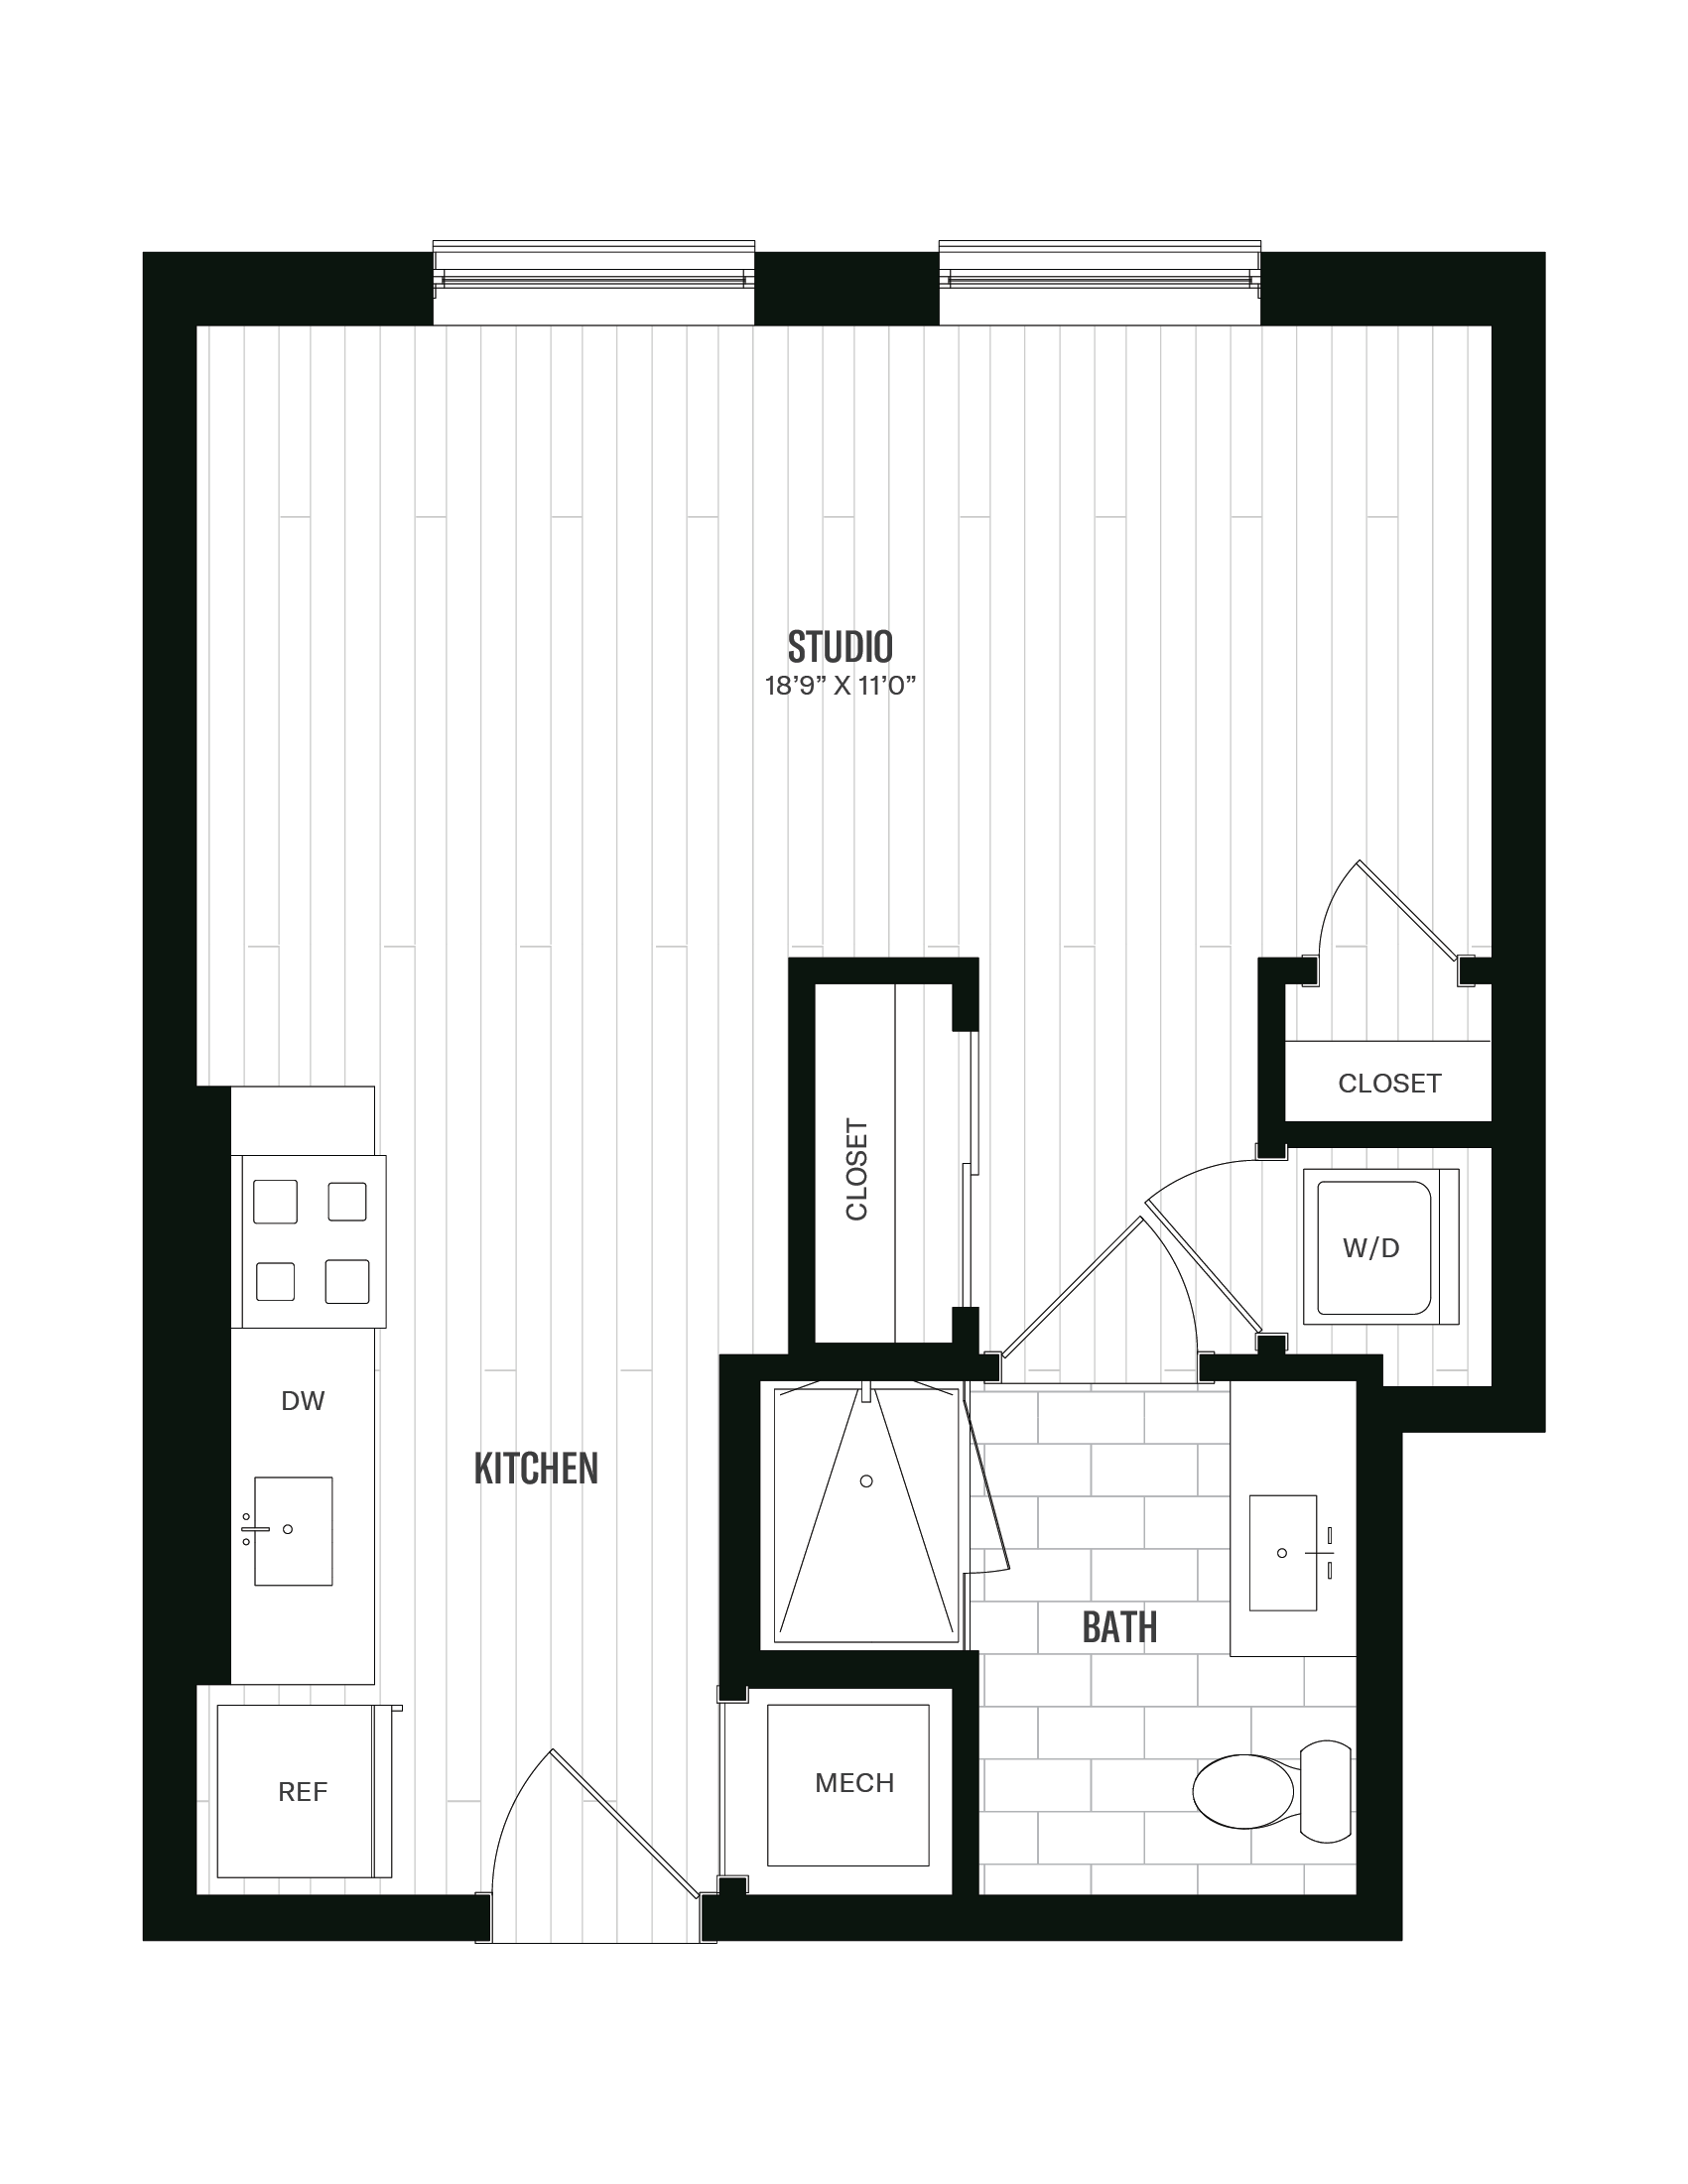 Floorplan image of unit 348